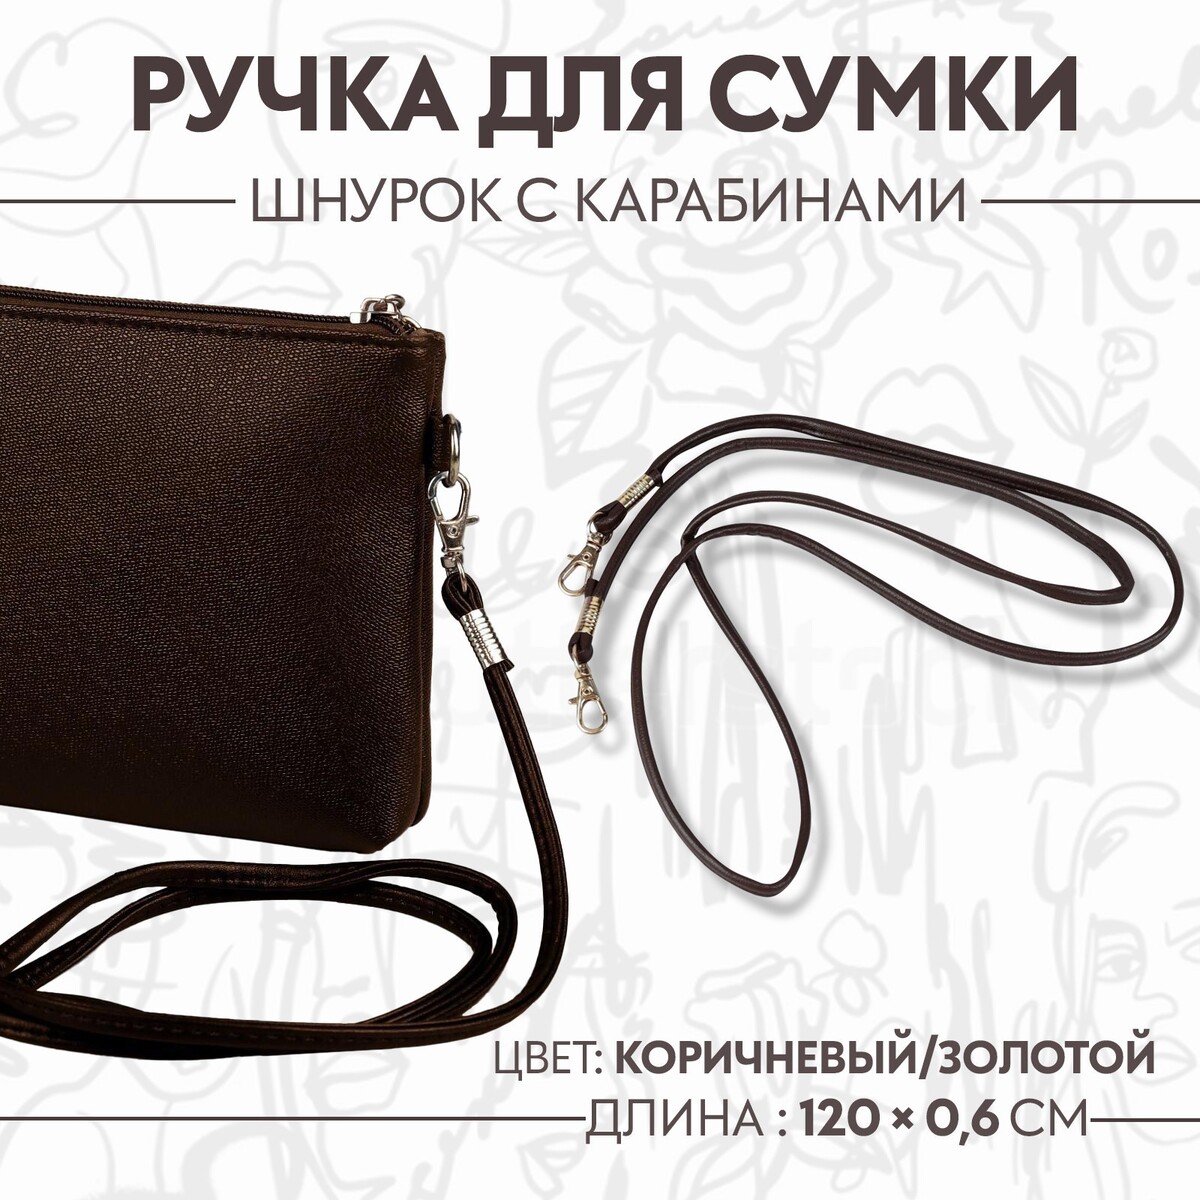 Ручка-шнурок для сумки, с карабинами, 120 × 0,6 см, цвет коричневый ручка для сумки с цепочками и карабинами 120 × 1 8 см бордовый